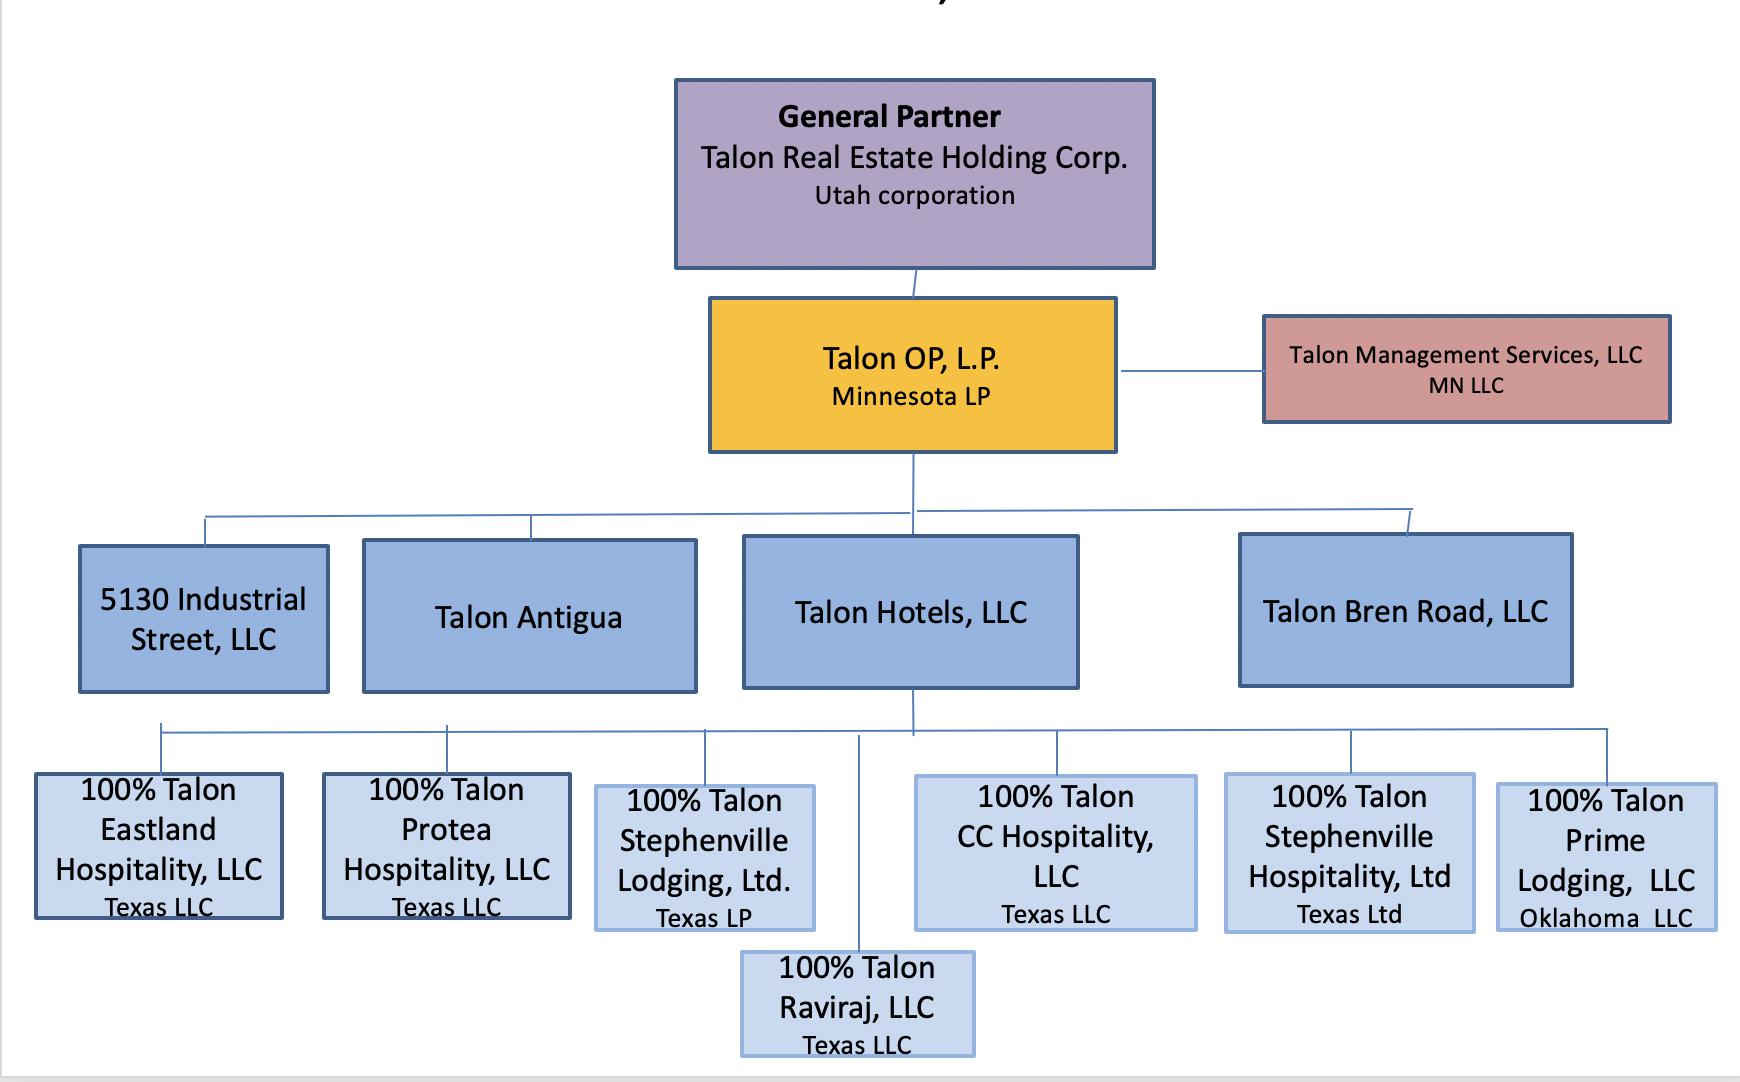 Organizational Structure in 2019